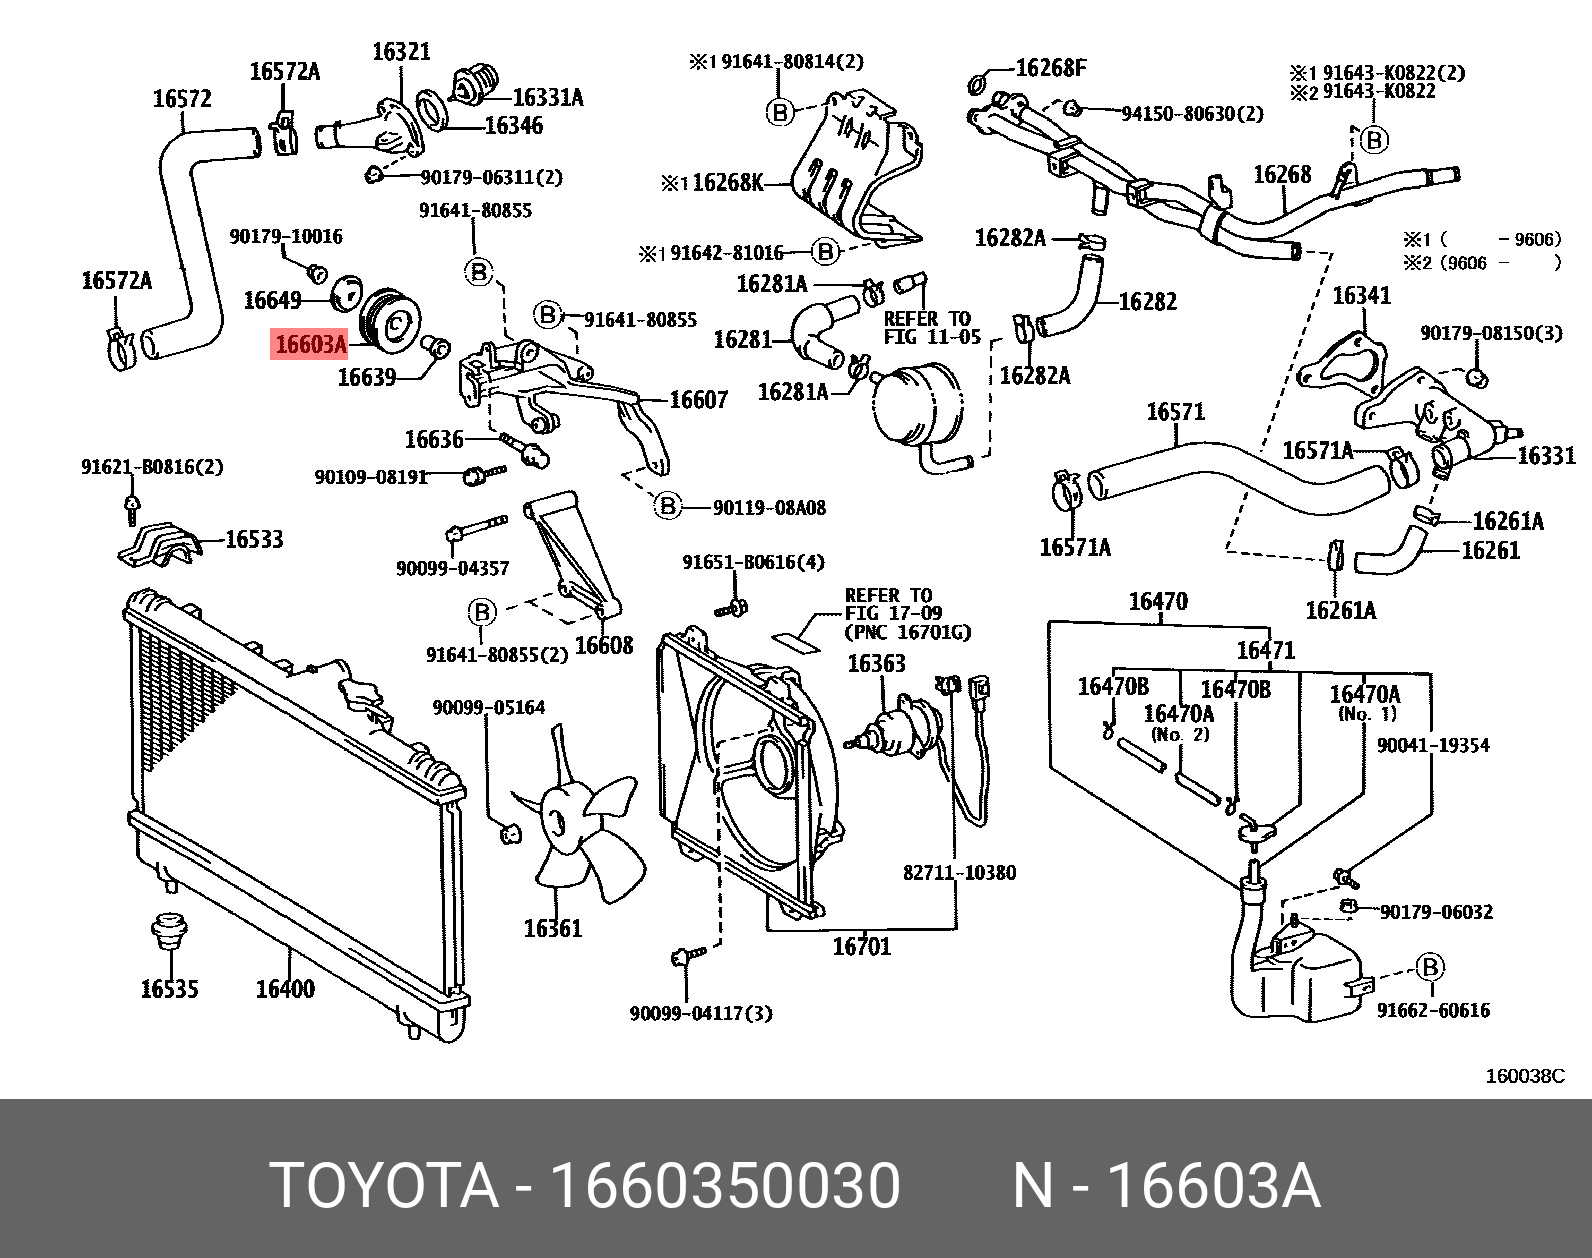 Ролик направляющий - Toyota 16603-50030